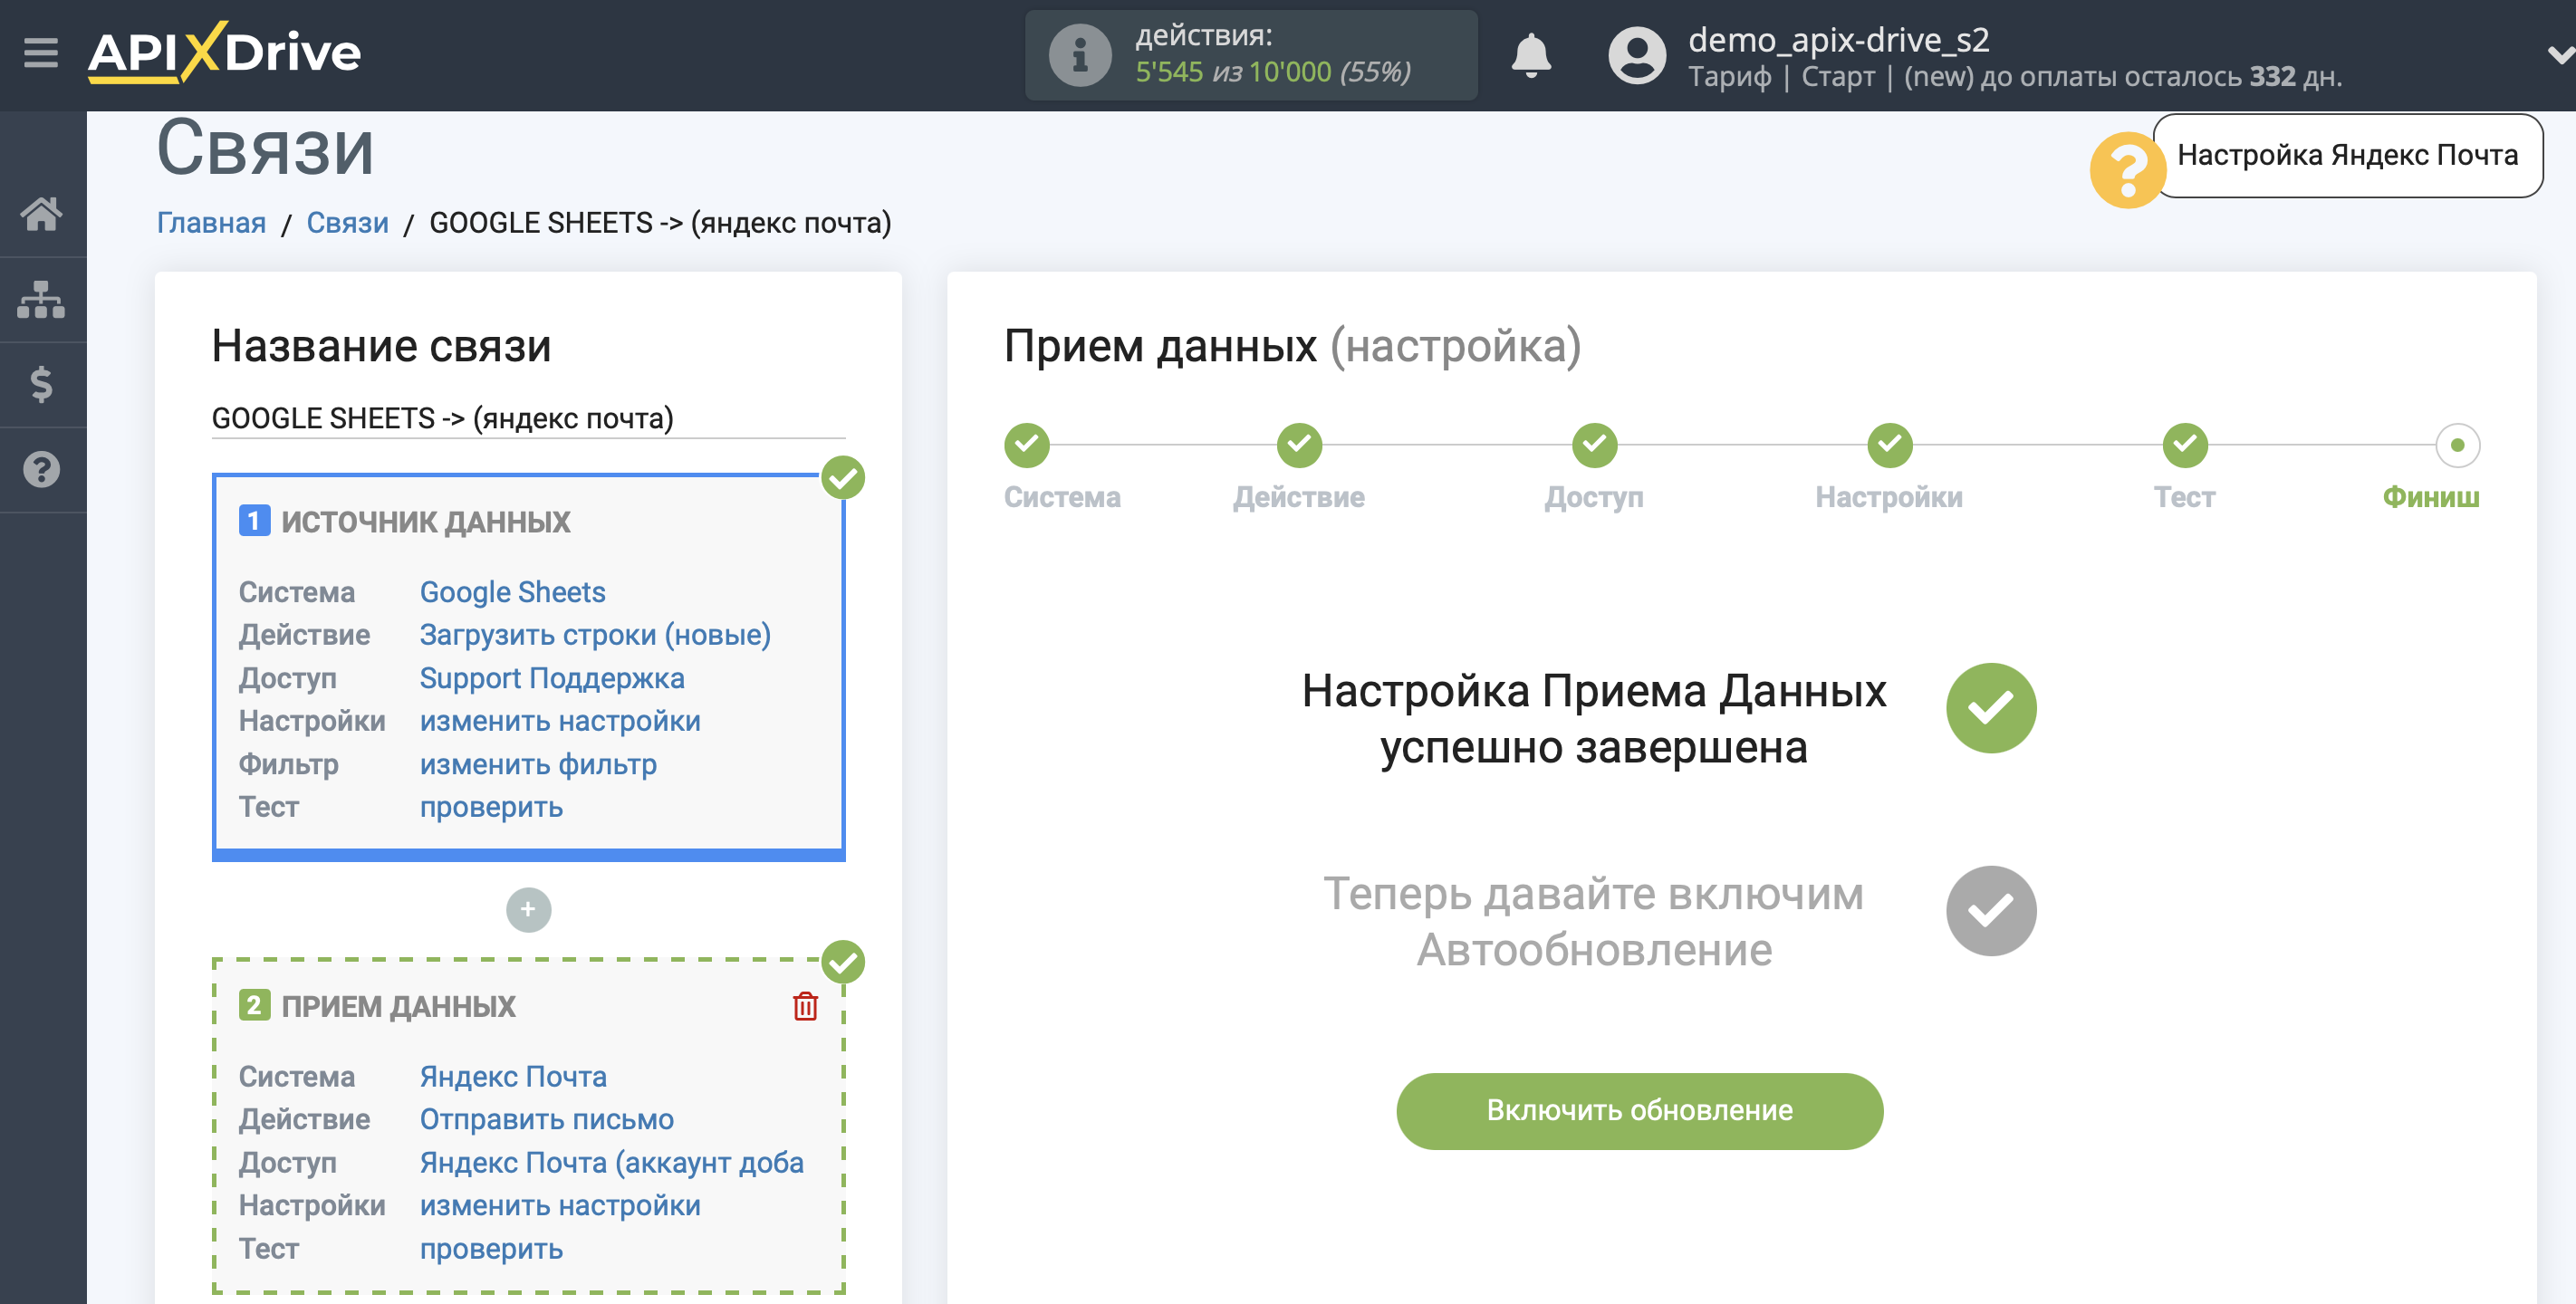 Настройка Яндекс Почта в качестве Приема данных | Переход к настройкам связи